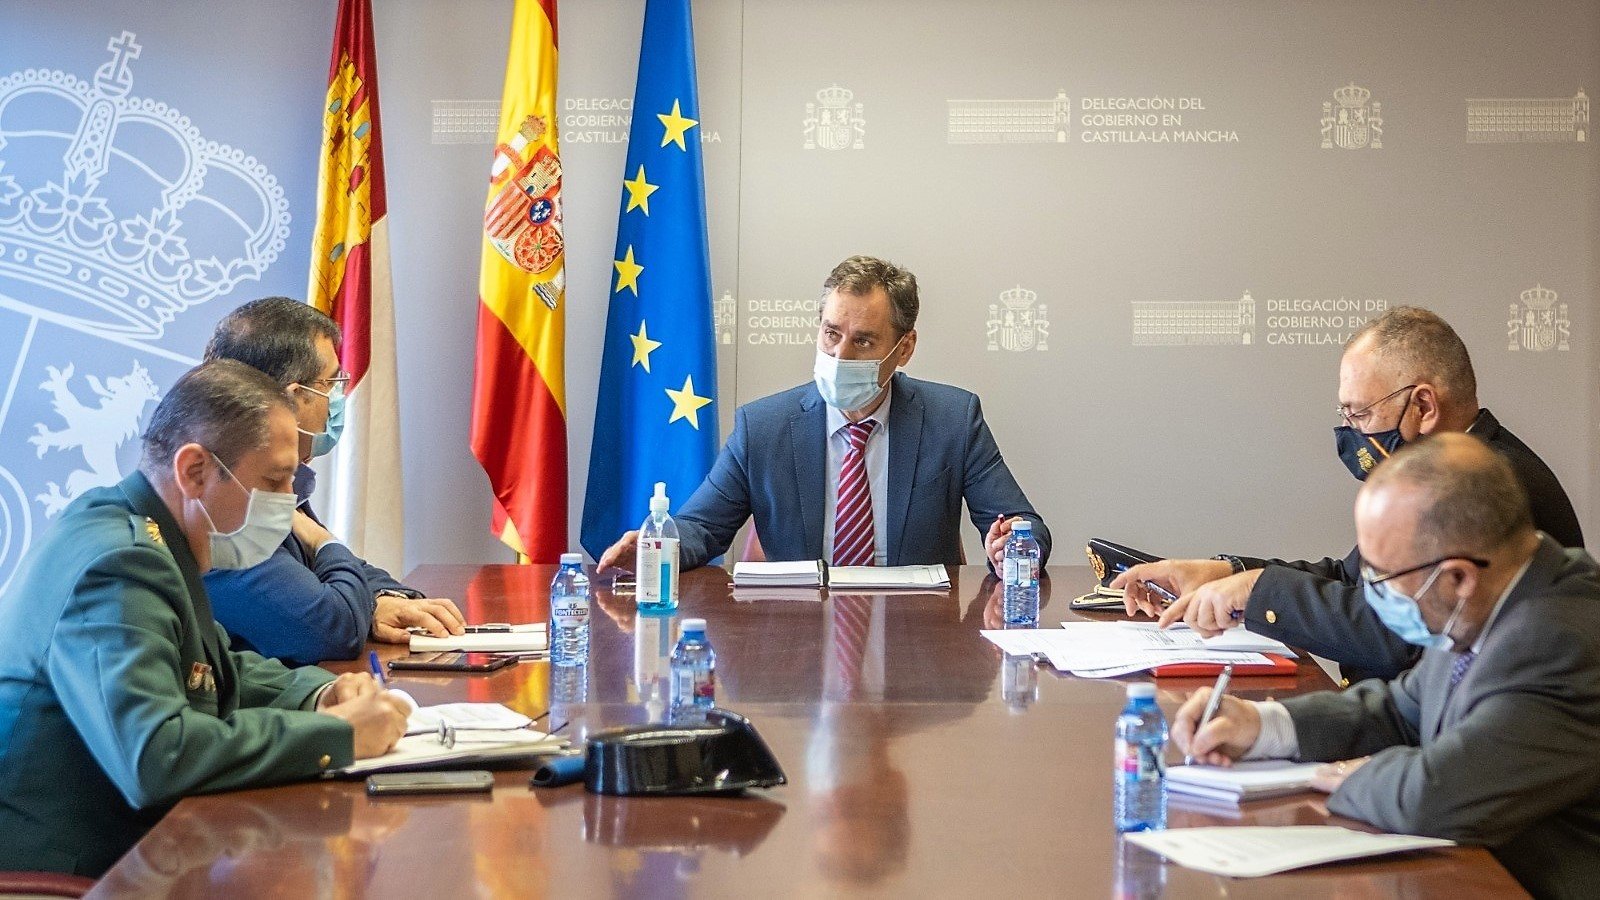 Reunión en la Delegación del Gobierno en Castilla-La Mancha, el 3 de diciembre de 2020.